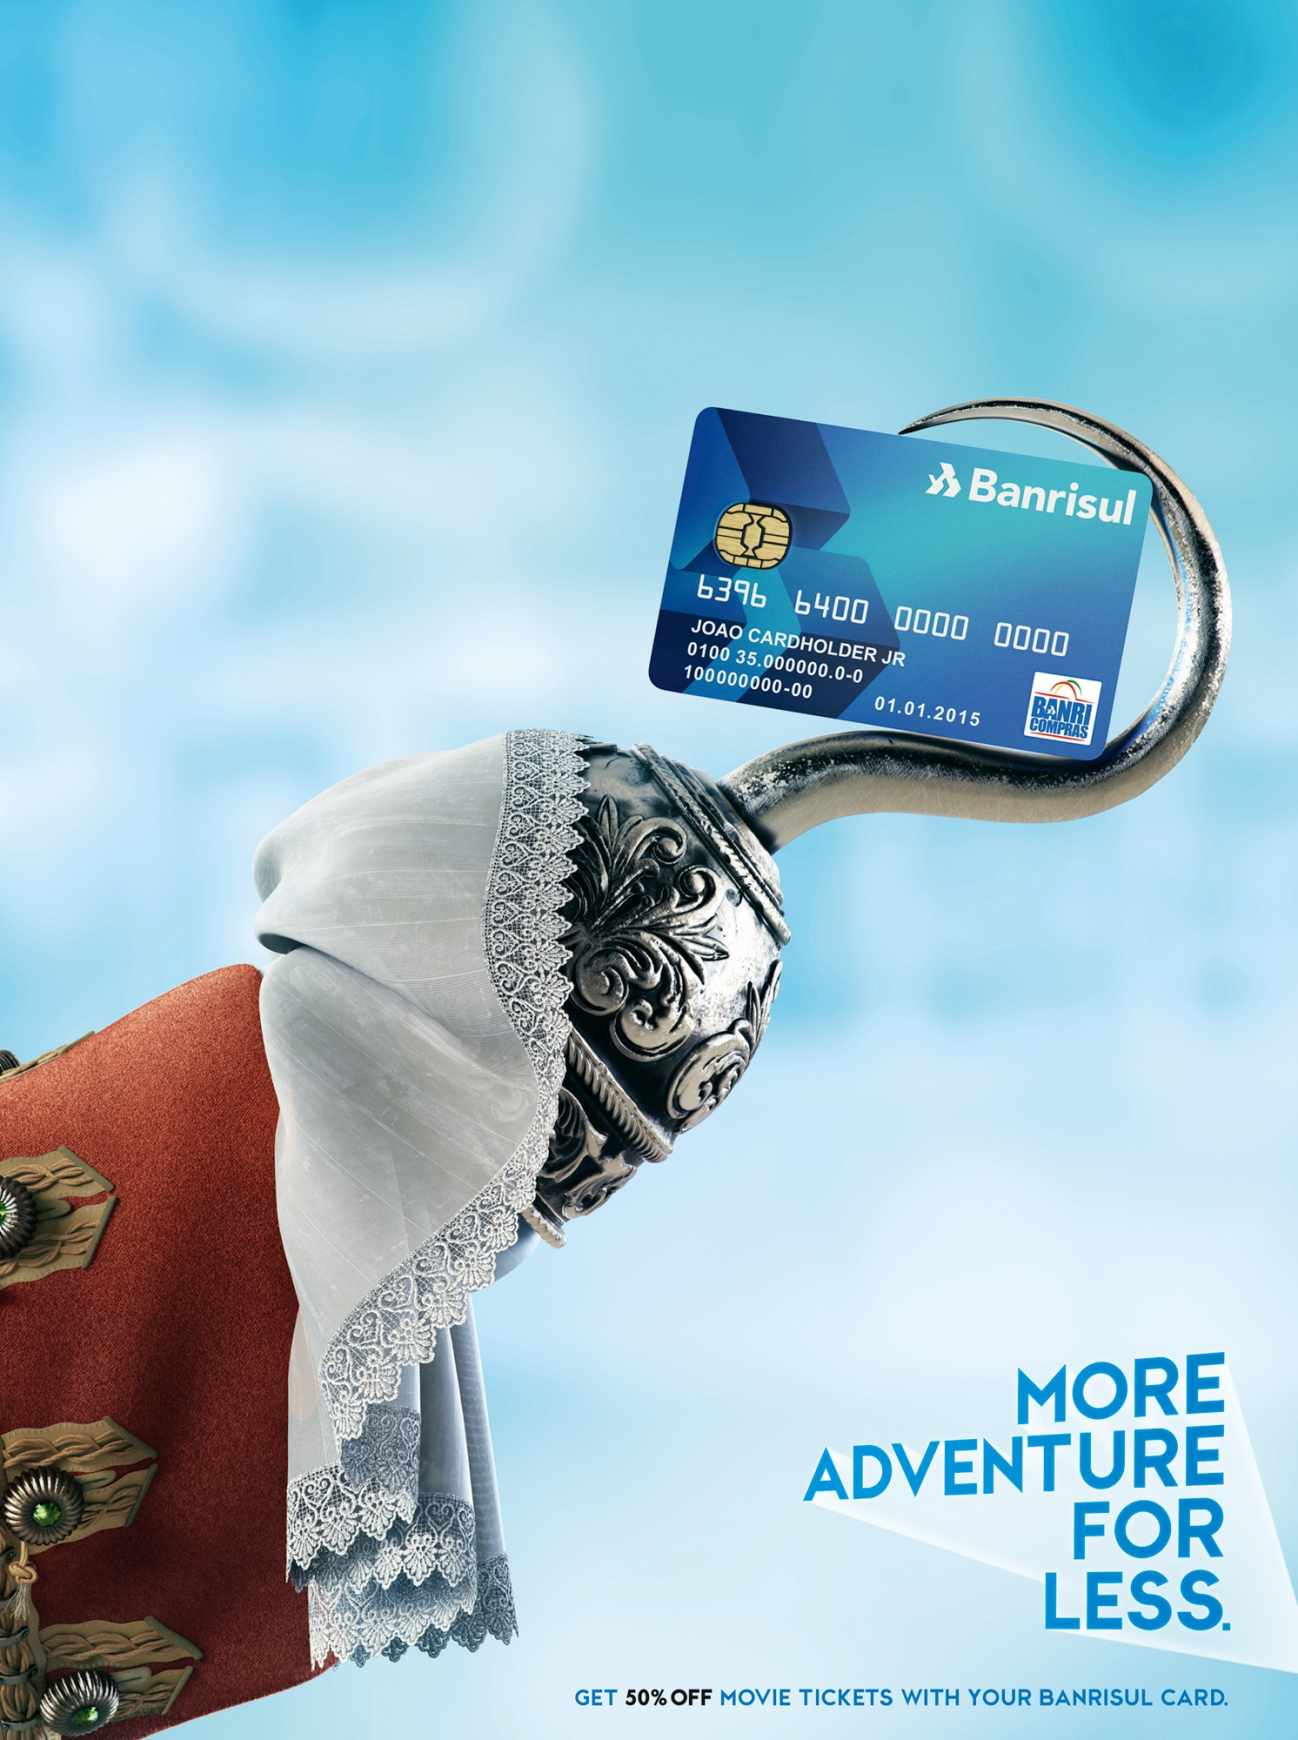 巴西BANRISUL信用卡宣传平面广告设计